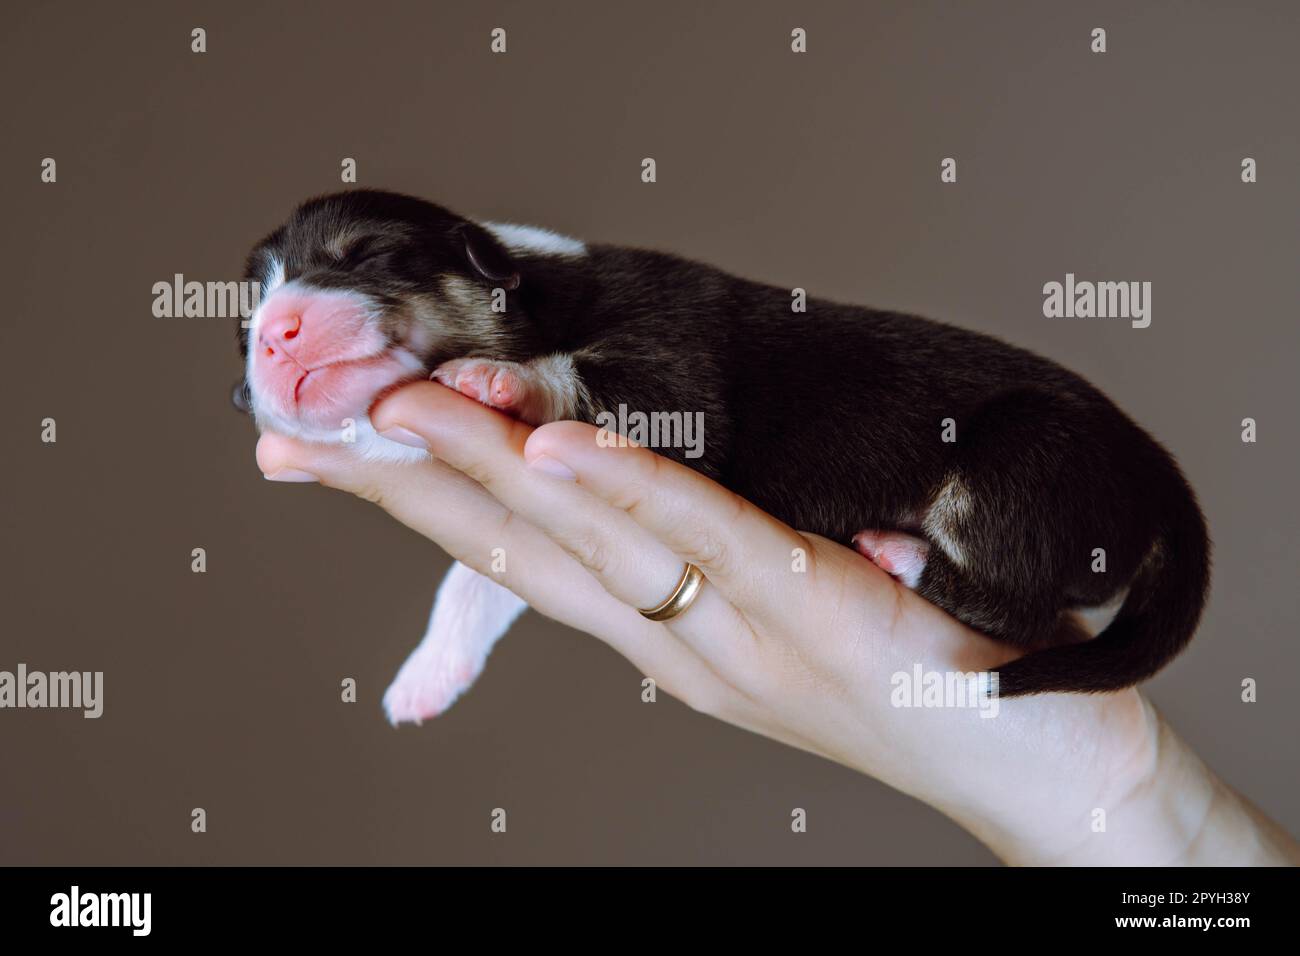 Vue latérale du joli chiot de deux mois de chien pembroke welsh corgi dormant relaxant sur la main de la femme pendant la patte. Banque D'Images